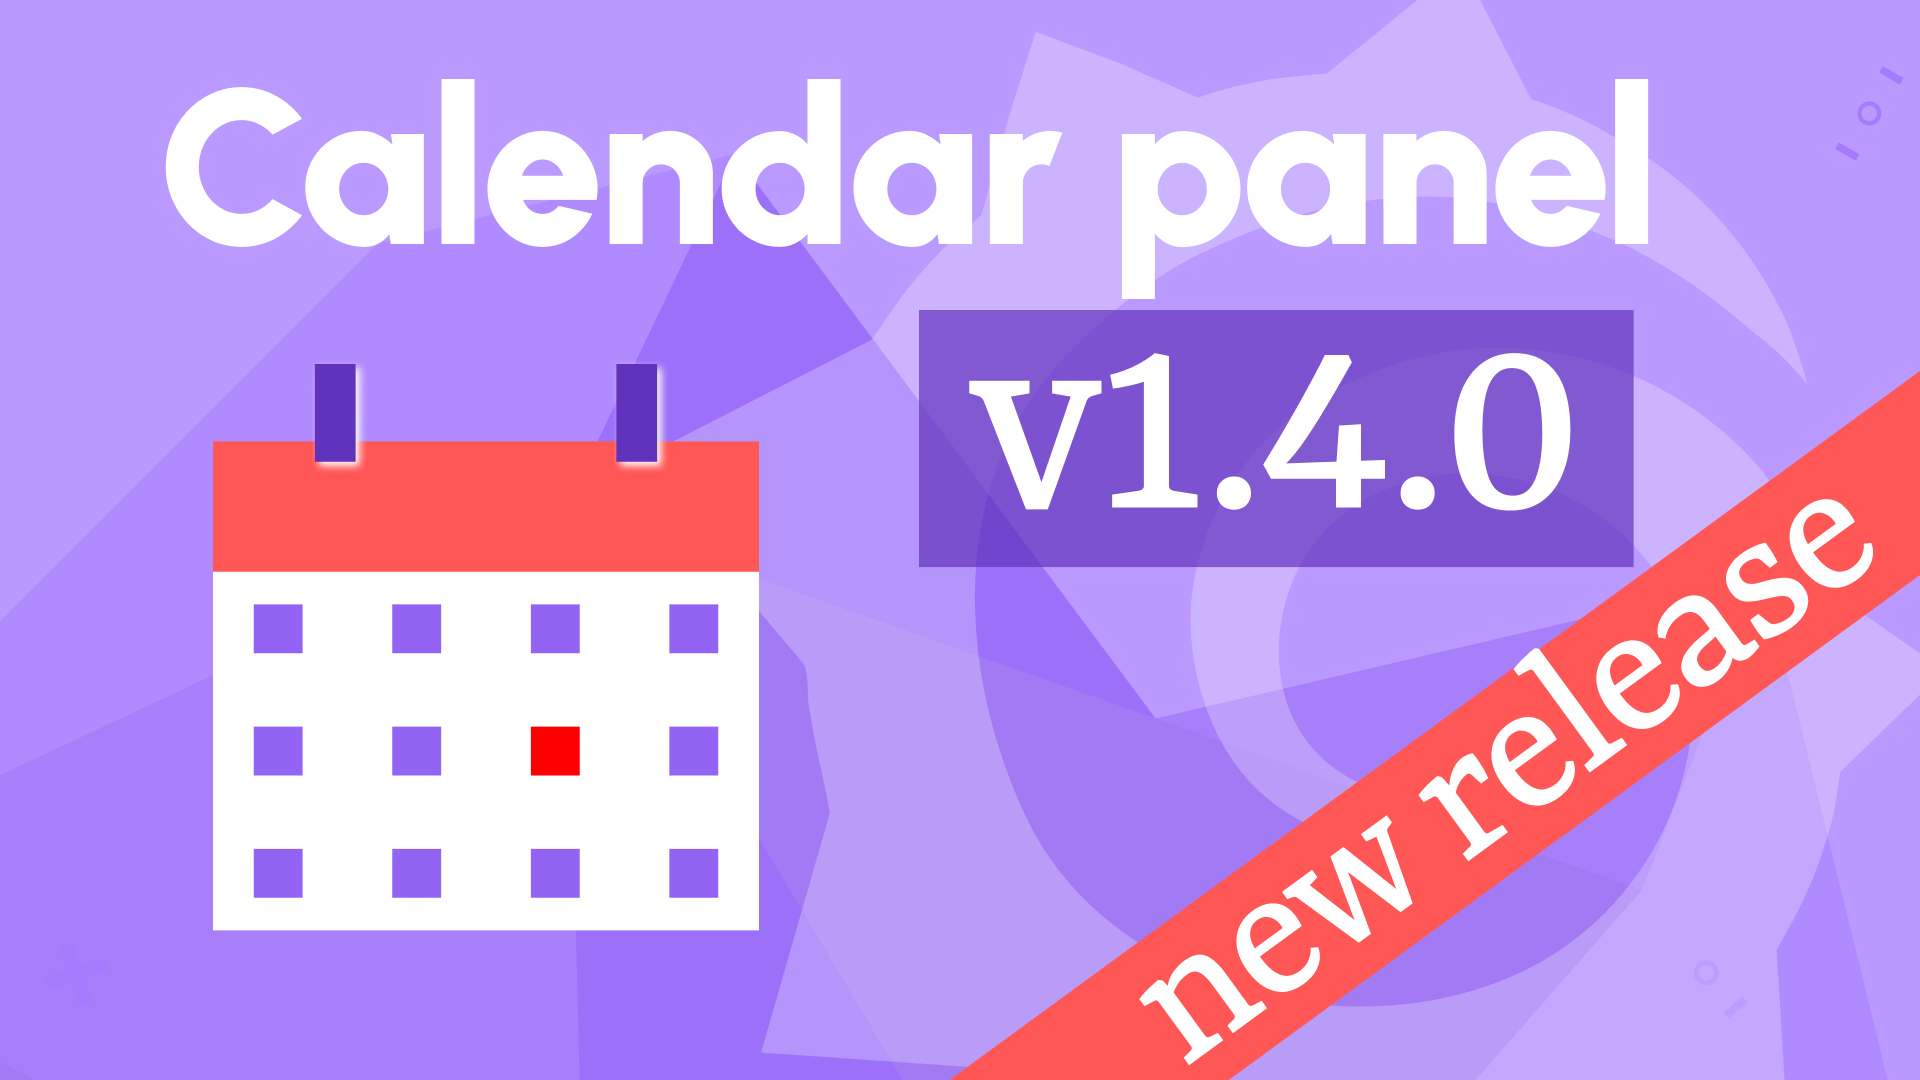 Calendar Panel 1.4.0 supports Grafana 10